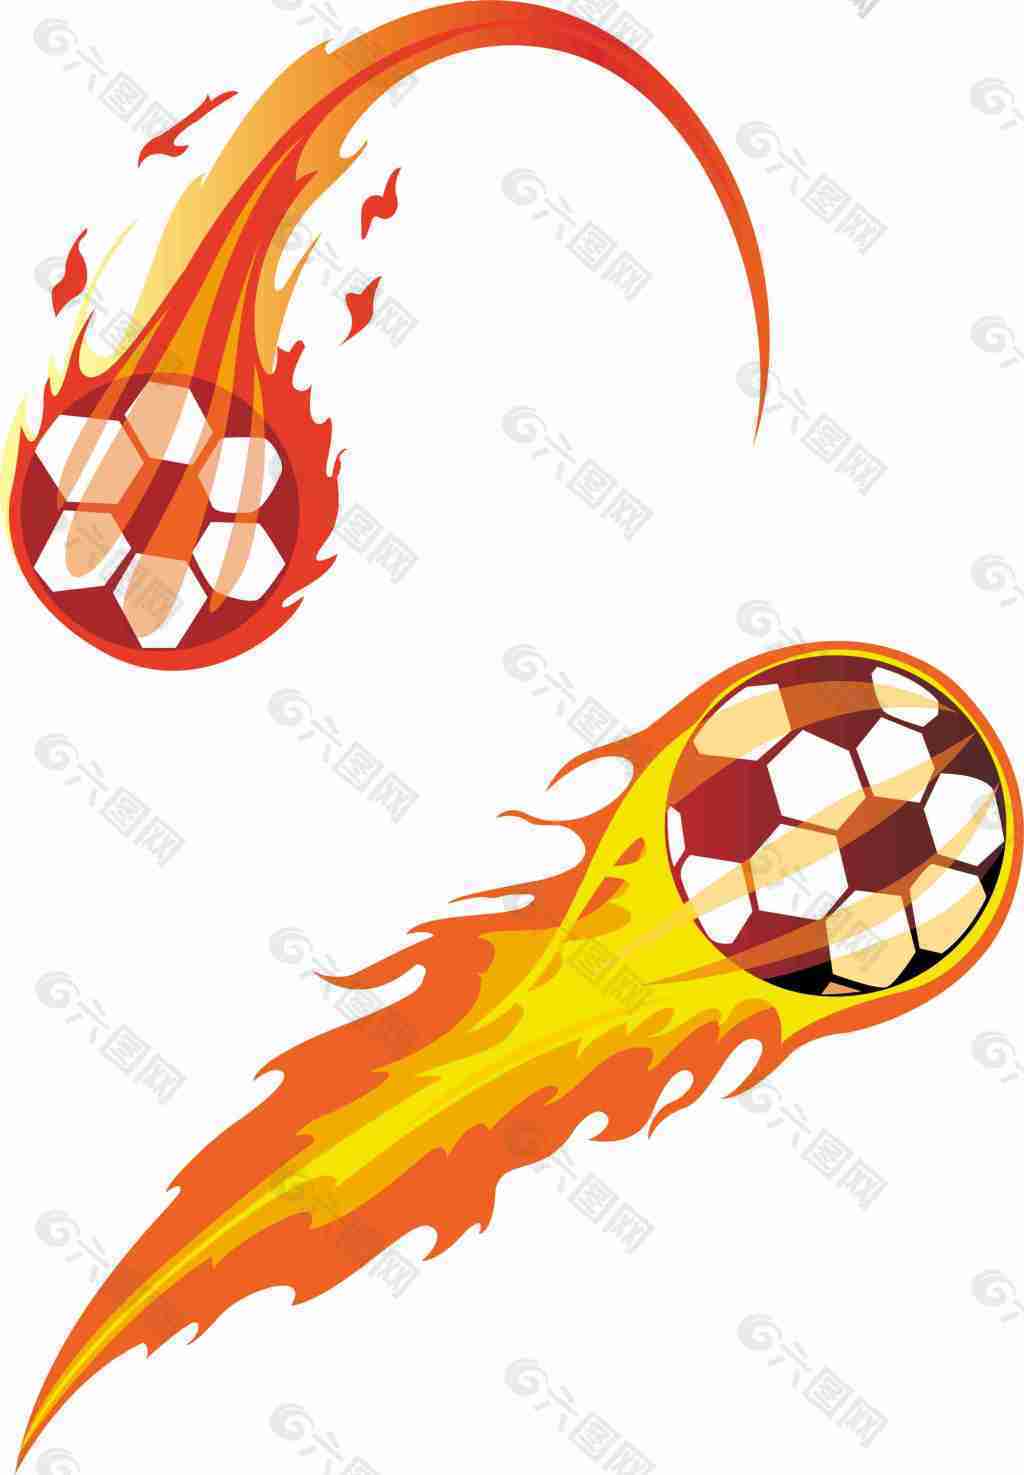 Flaming Soccer Ball Wallpaper - WallpaperSafari